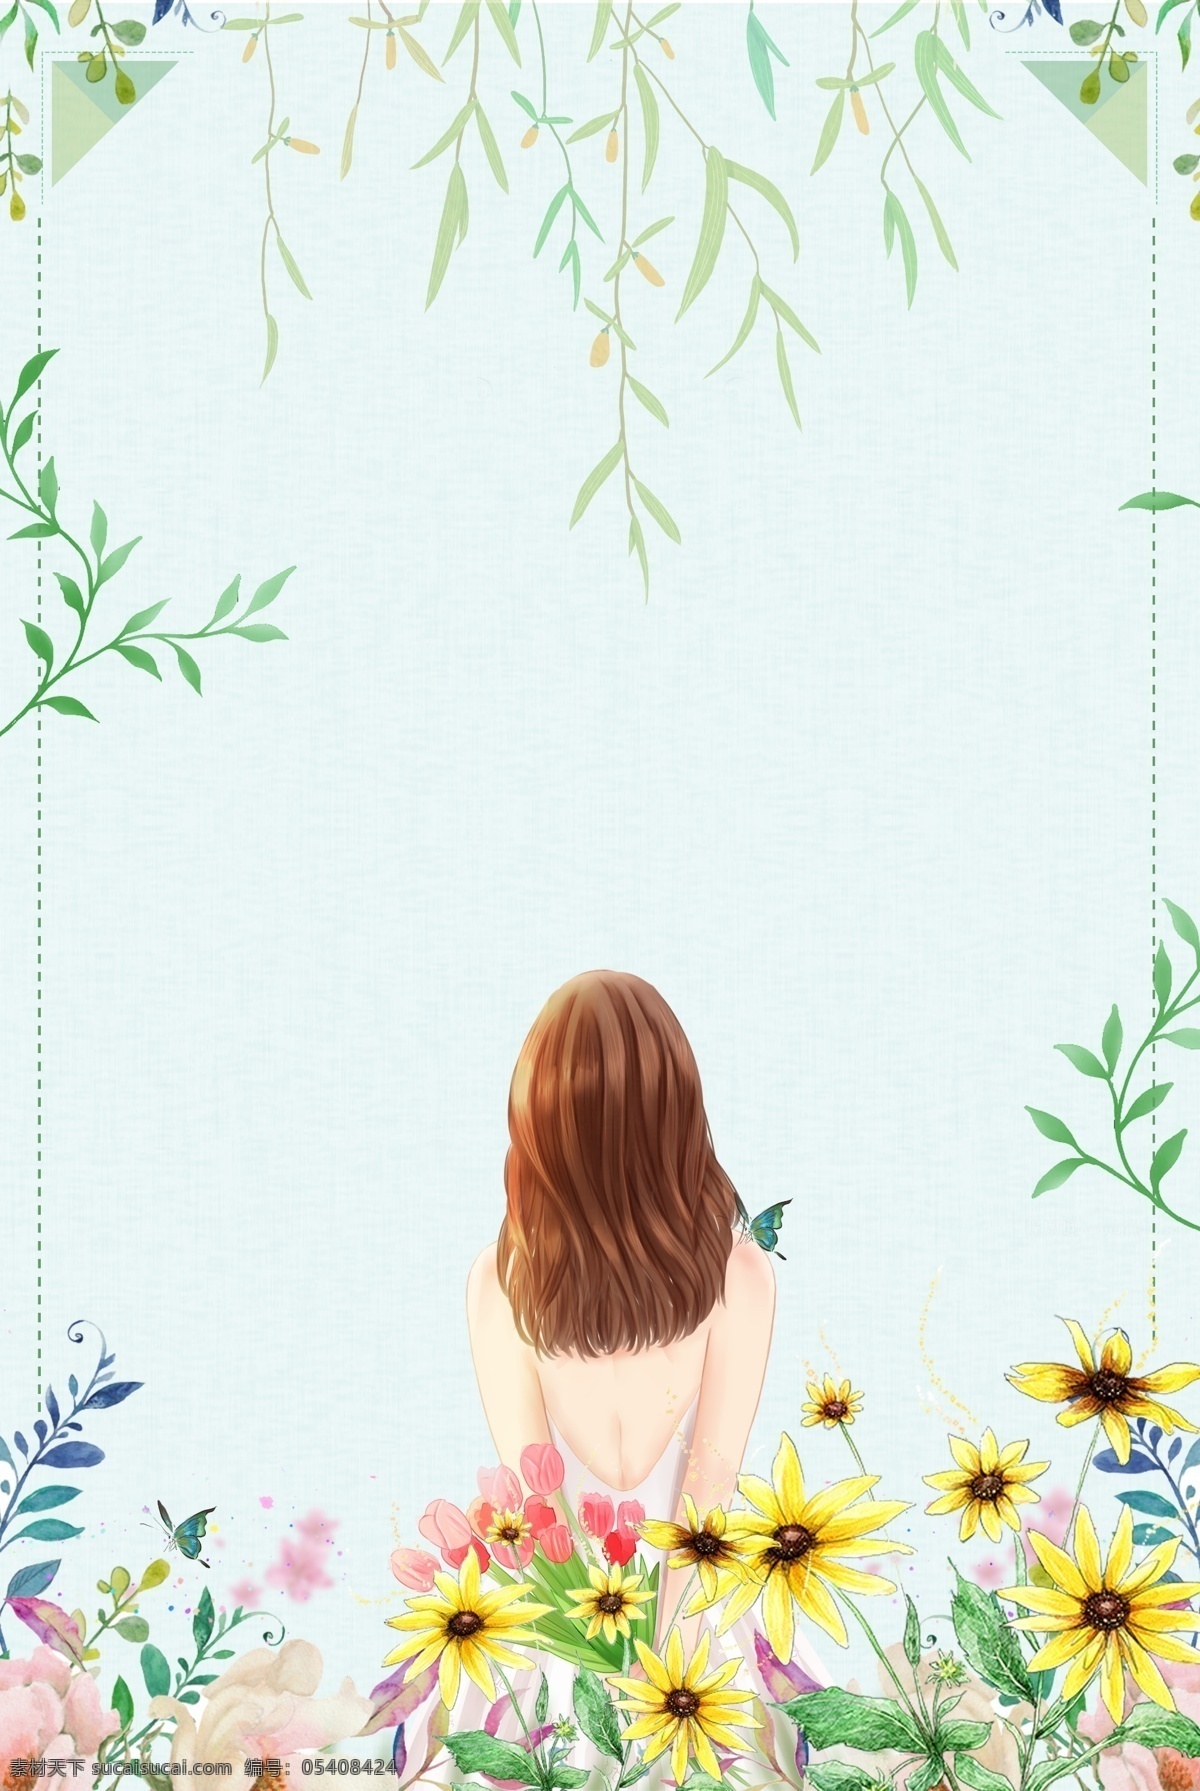 文艺 清新 唯美 绿色 手绘 植物 花朵 电商 背景 女孩 背影